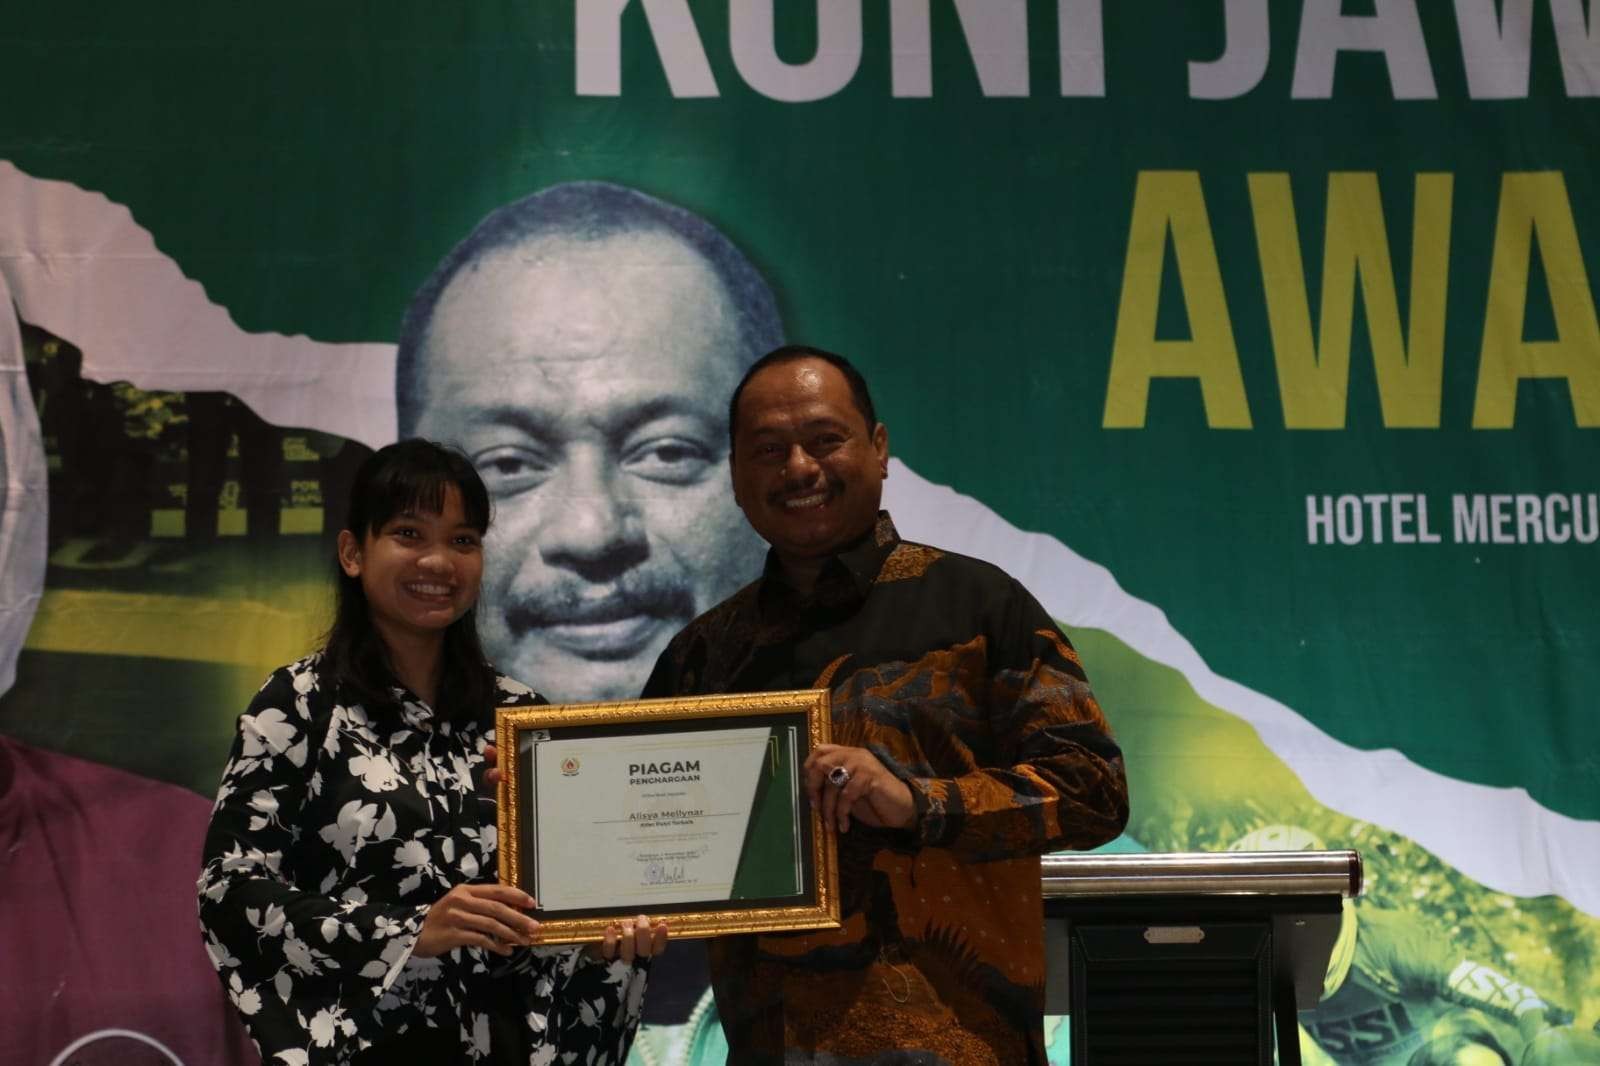 Ketua KONI Jatim M Nabil (kanan) memberi penghargaan kepada Atlet Putri Terbaik Alisya Mellynar dalam KONI Jatim Award 2022 di Hotel Mercure, Surabaya, Jumat 4 November 2022 malam. (Foto: Fariz Yarbo/Ngopibareng.id)